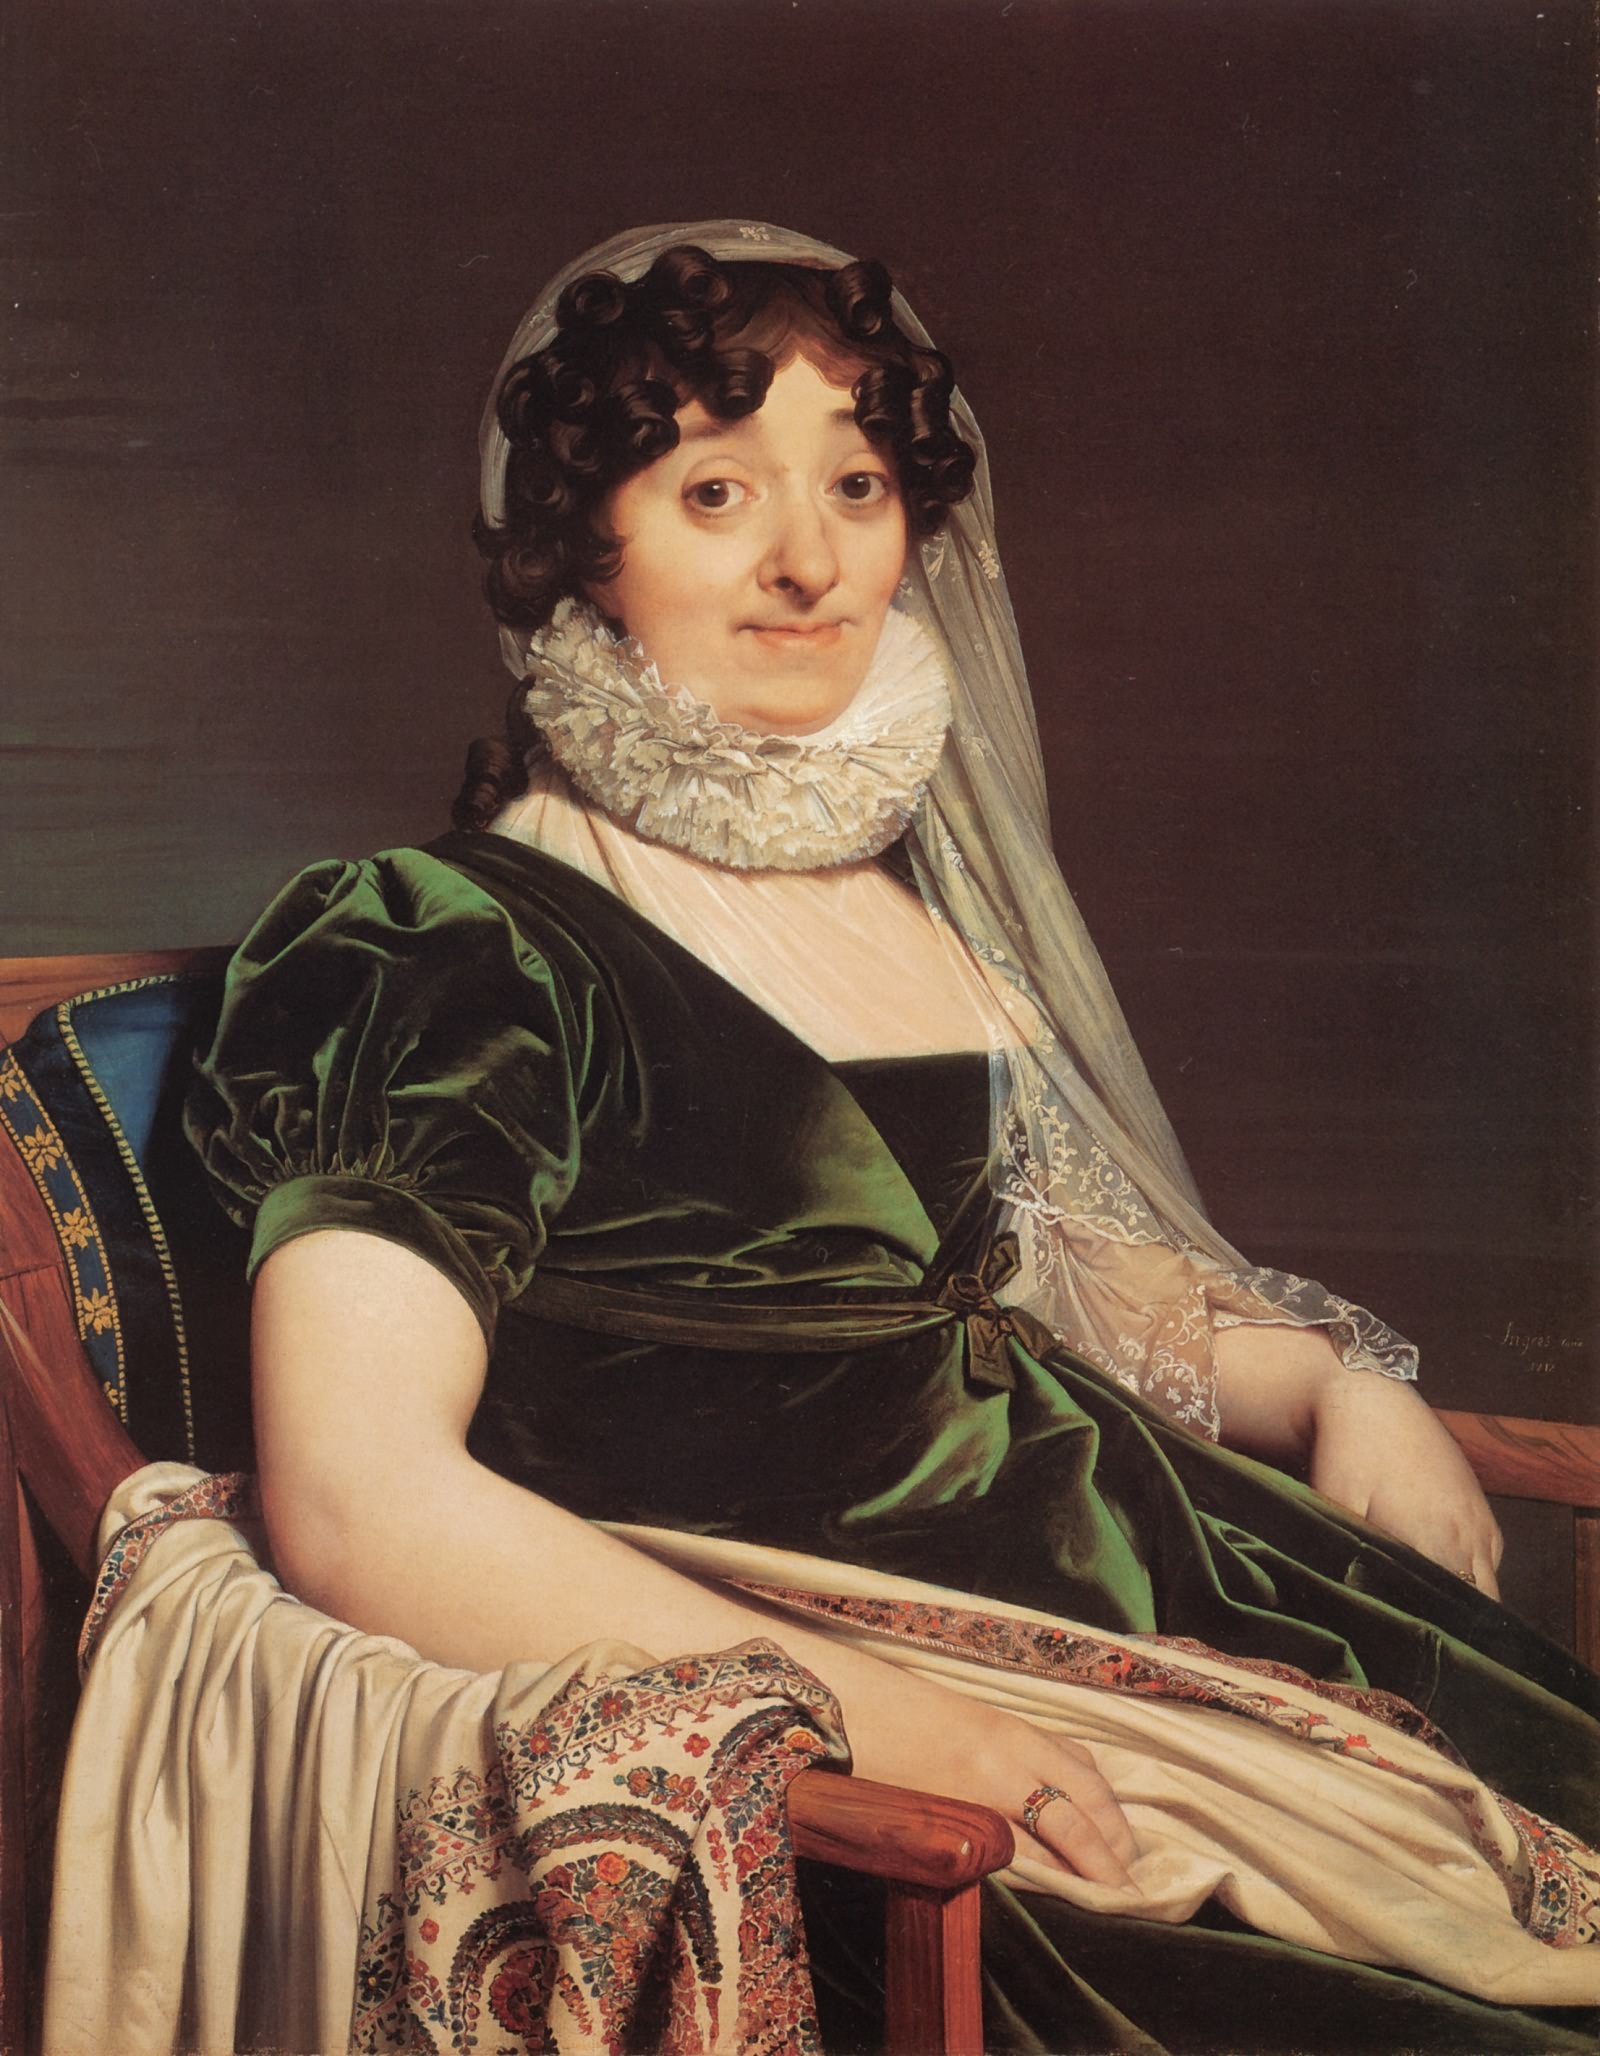 安格尔高清油画图片《图尔农女伯爵像》